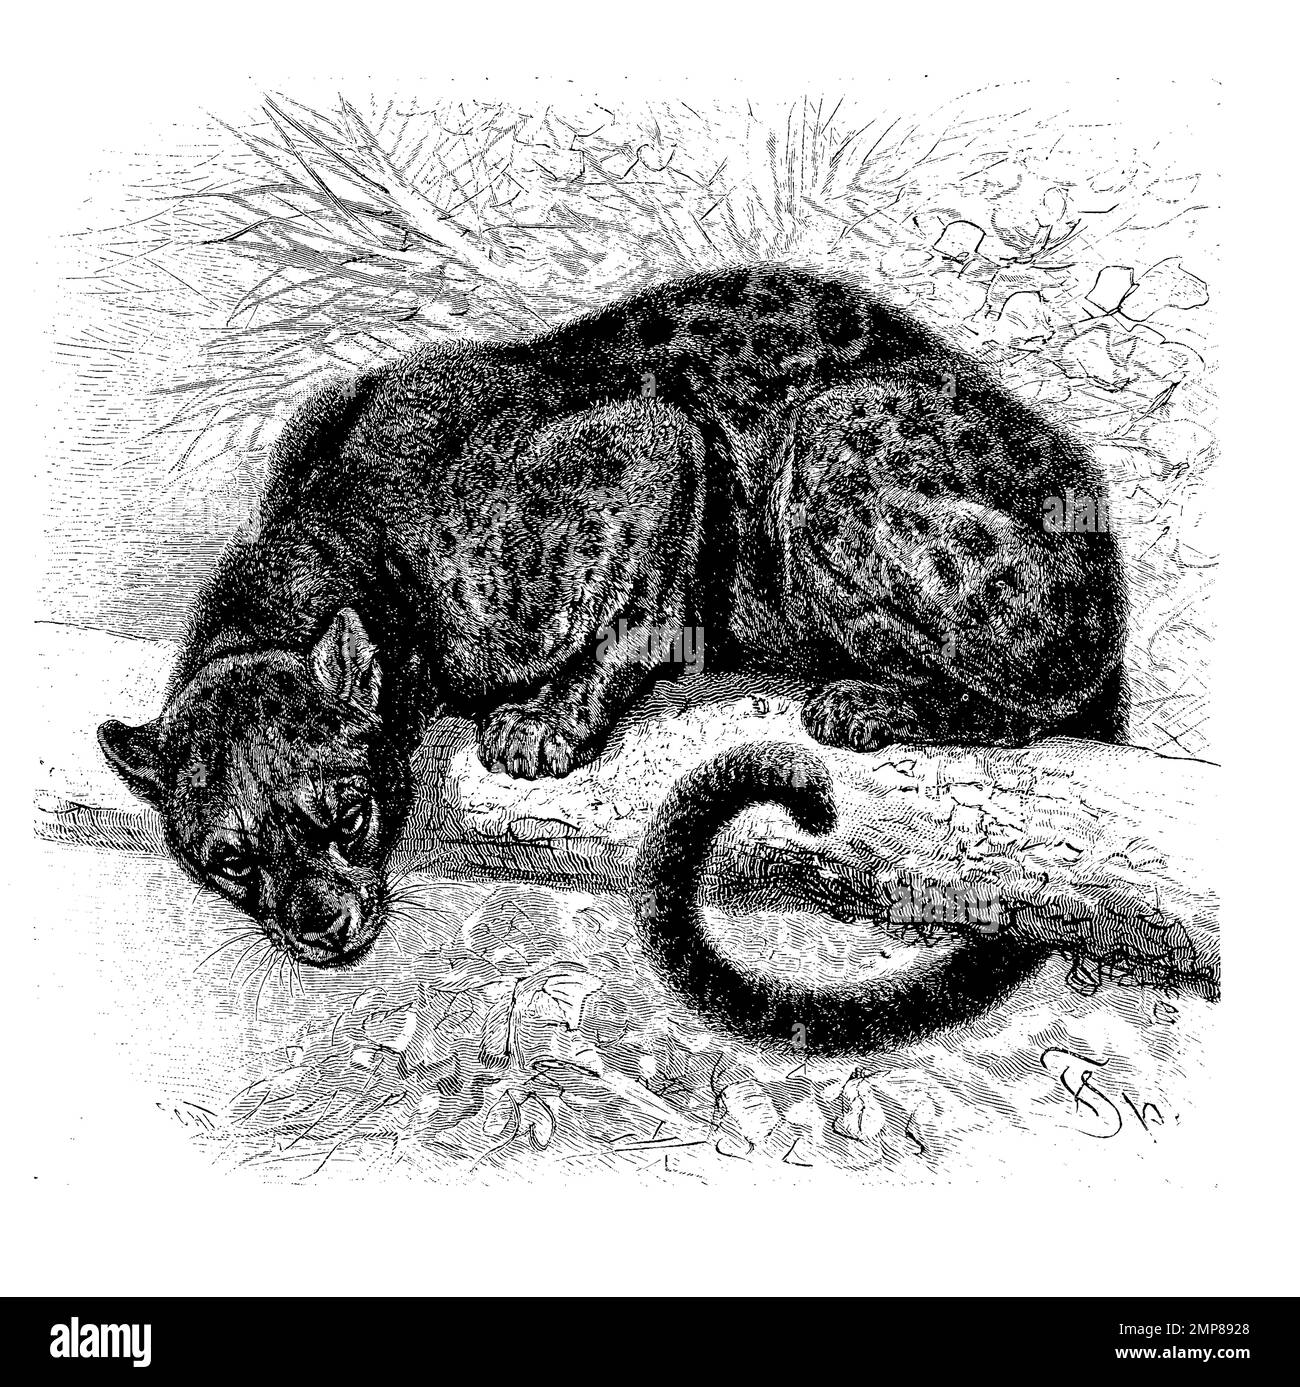 schwarzer Sundapanther, Felis variegata, ristorante digitale Reproduktion einer Originalvorlage aus dem 19. Jahrhundert, genaues Originalatum nicht bekannt Foto Stock